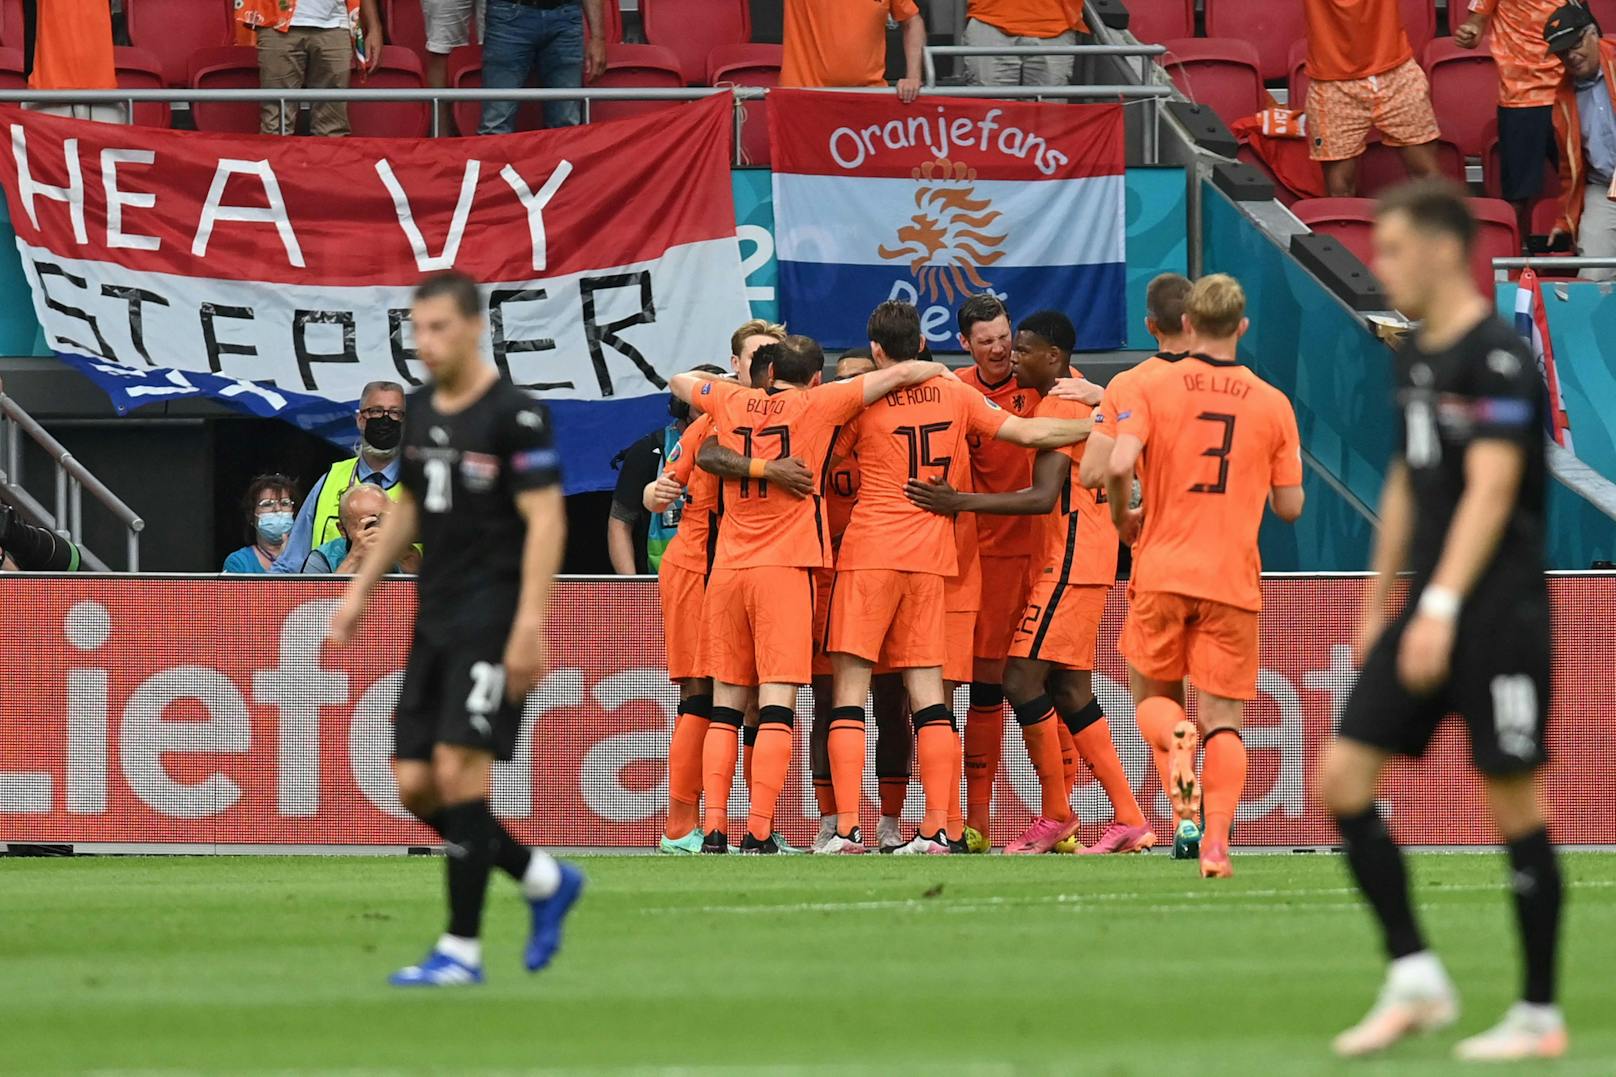 Österreich musste sich bei der Fußball-EM Holland mit 0:2 geschlagen geben. "Heute" analysiert die Teamspieler in der Einzelbewertung.